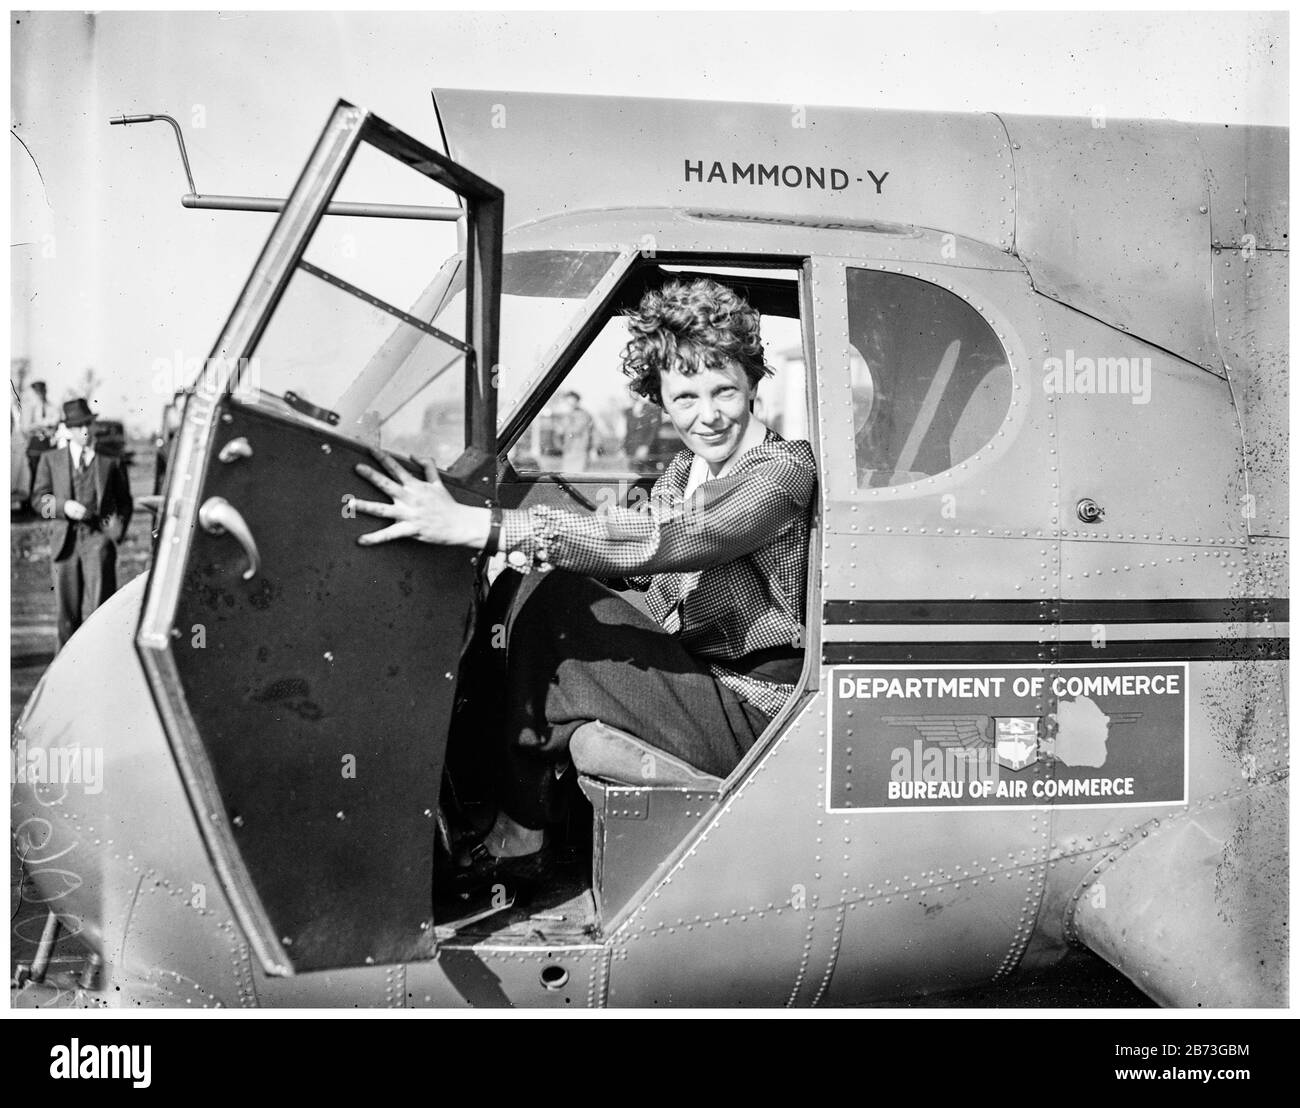 Amelia Earhart (ca. 1897-ca. 2. Juli 1937), amerikanische Flugpionierin in einem Flugzeug, Porträtfoto des 20. Jahrhunderts von Harris & Ewing, 1936 Stockfoto